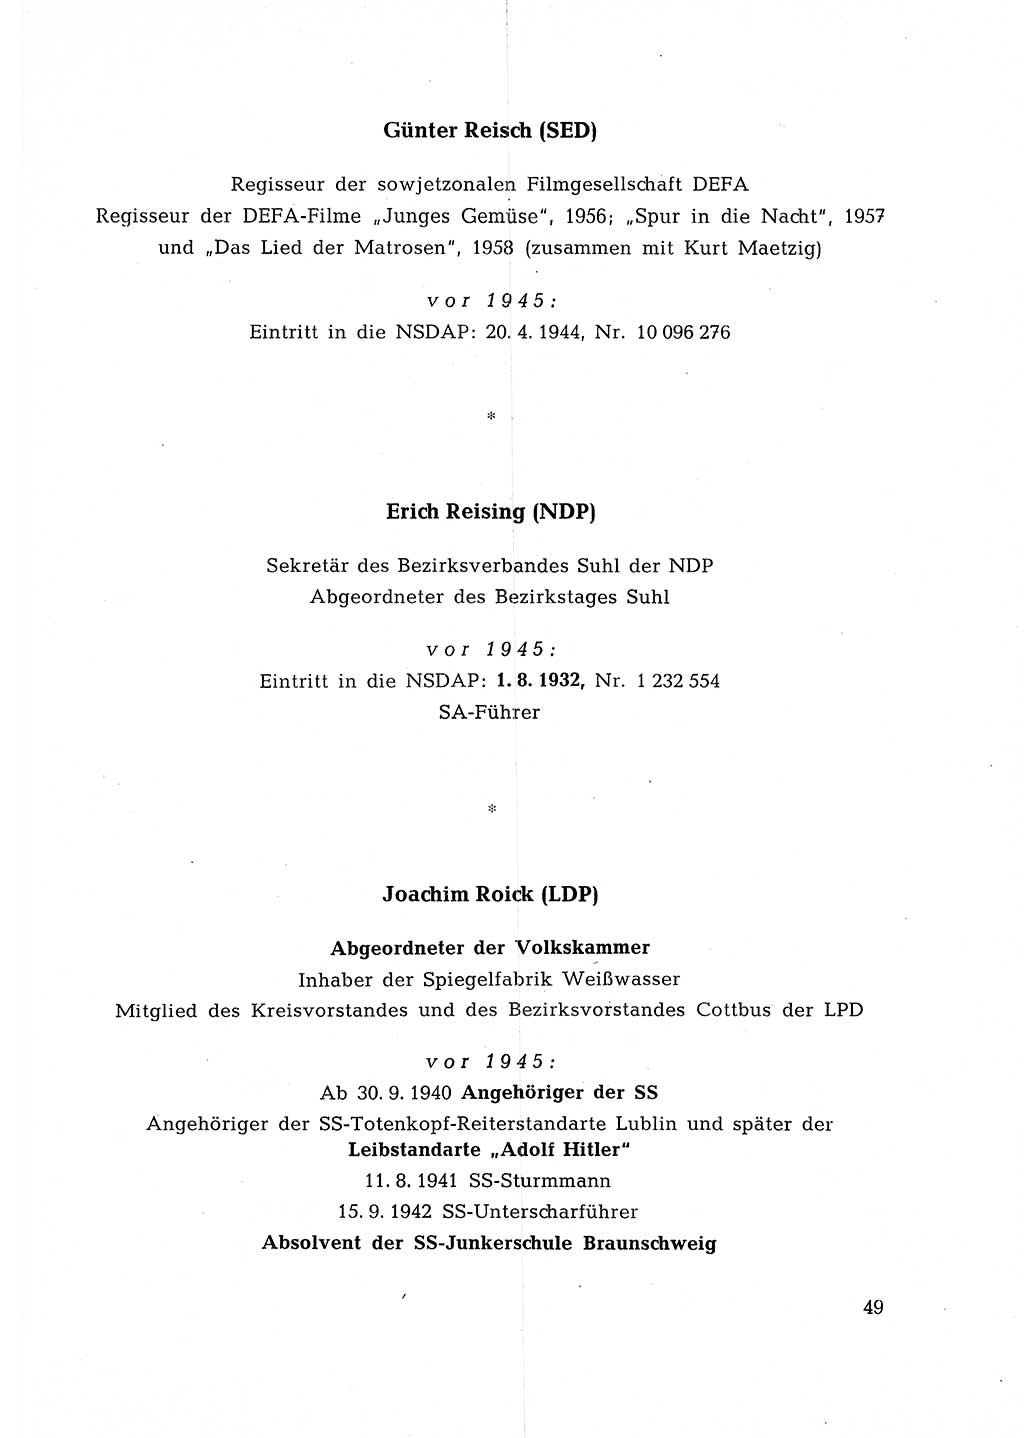 Ehemalige Nationalsozialisten in Pankows Diensten [Deutsche Demokratische Republik (DDR)] 1965, Seite 49 (Ehem. Nat.-Soz. DDR 1965, S. 49)